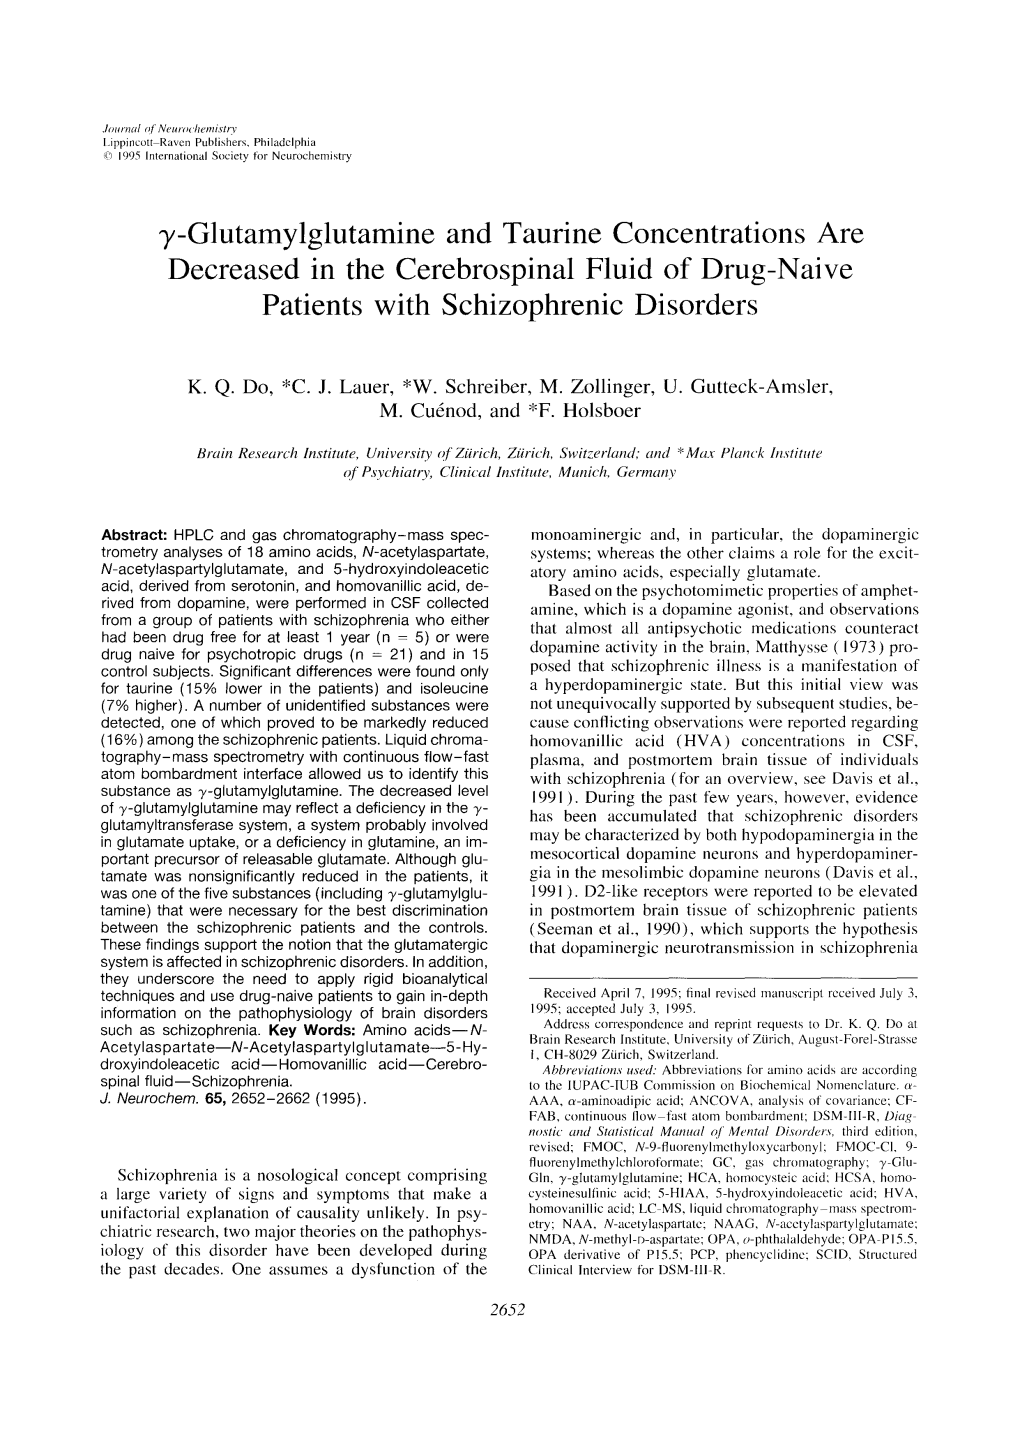 Γ-Glutamylglutamine and Taurine Concentrations Are Decreased In